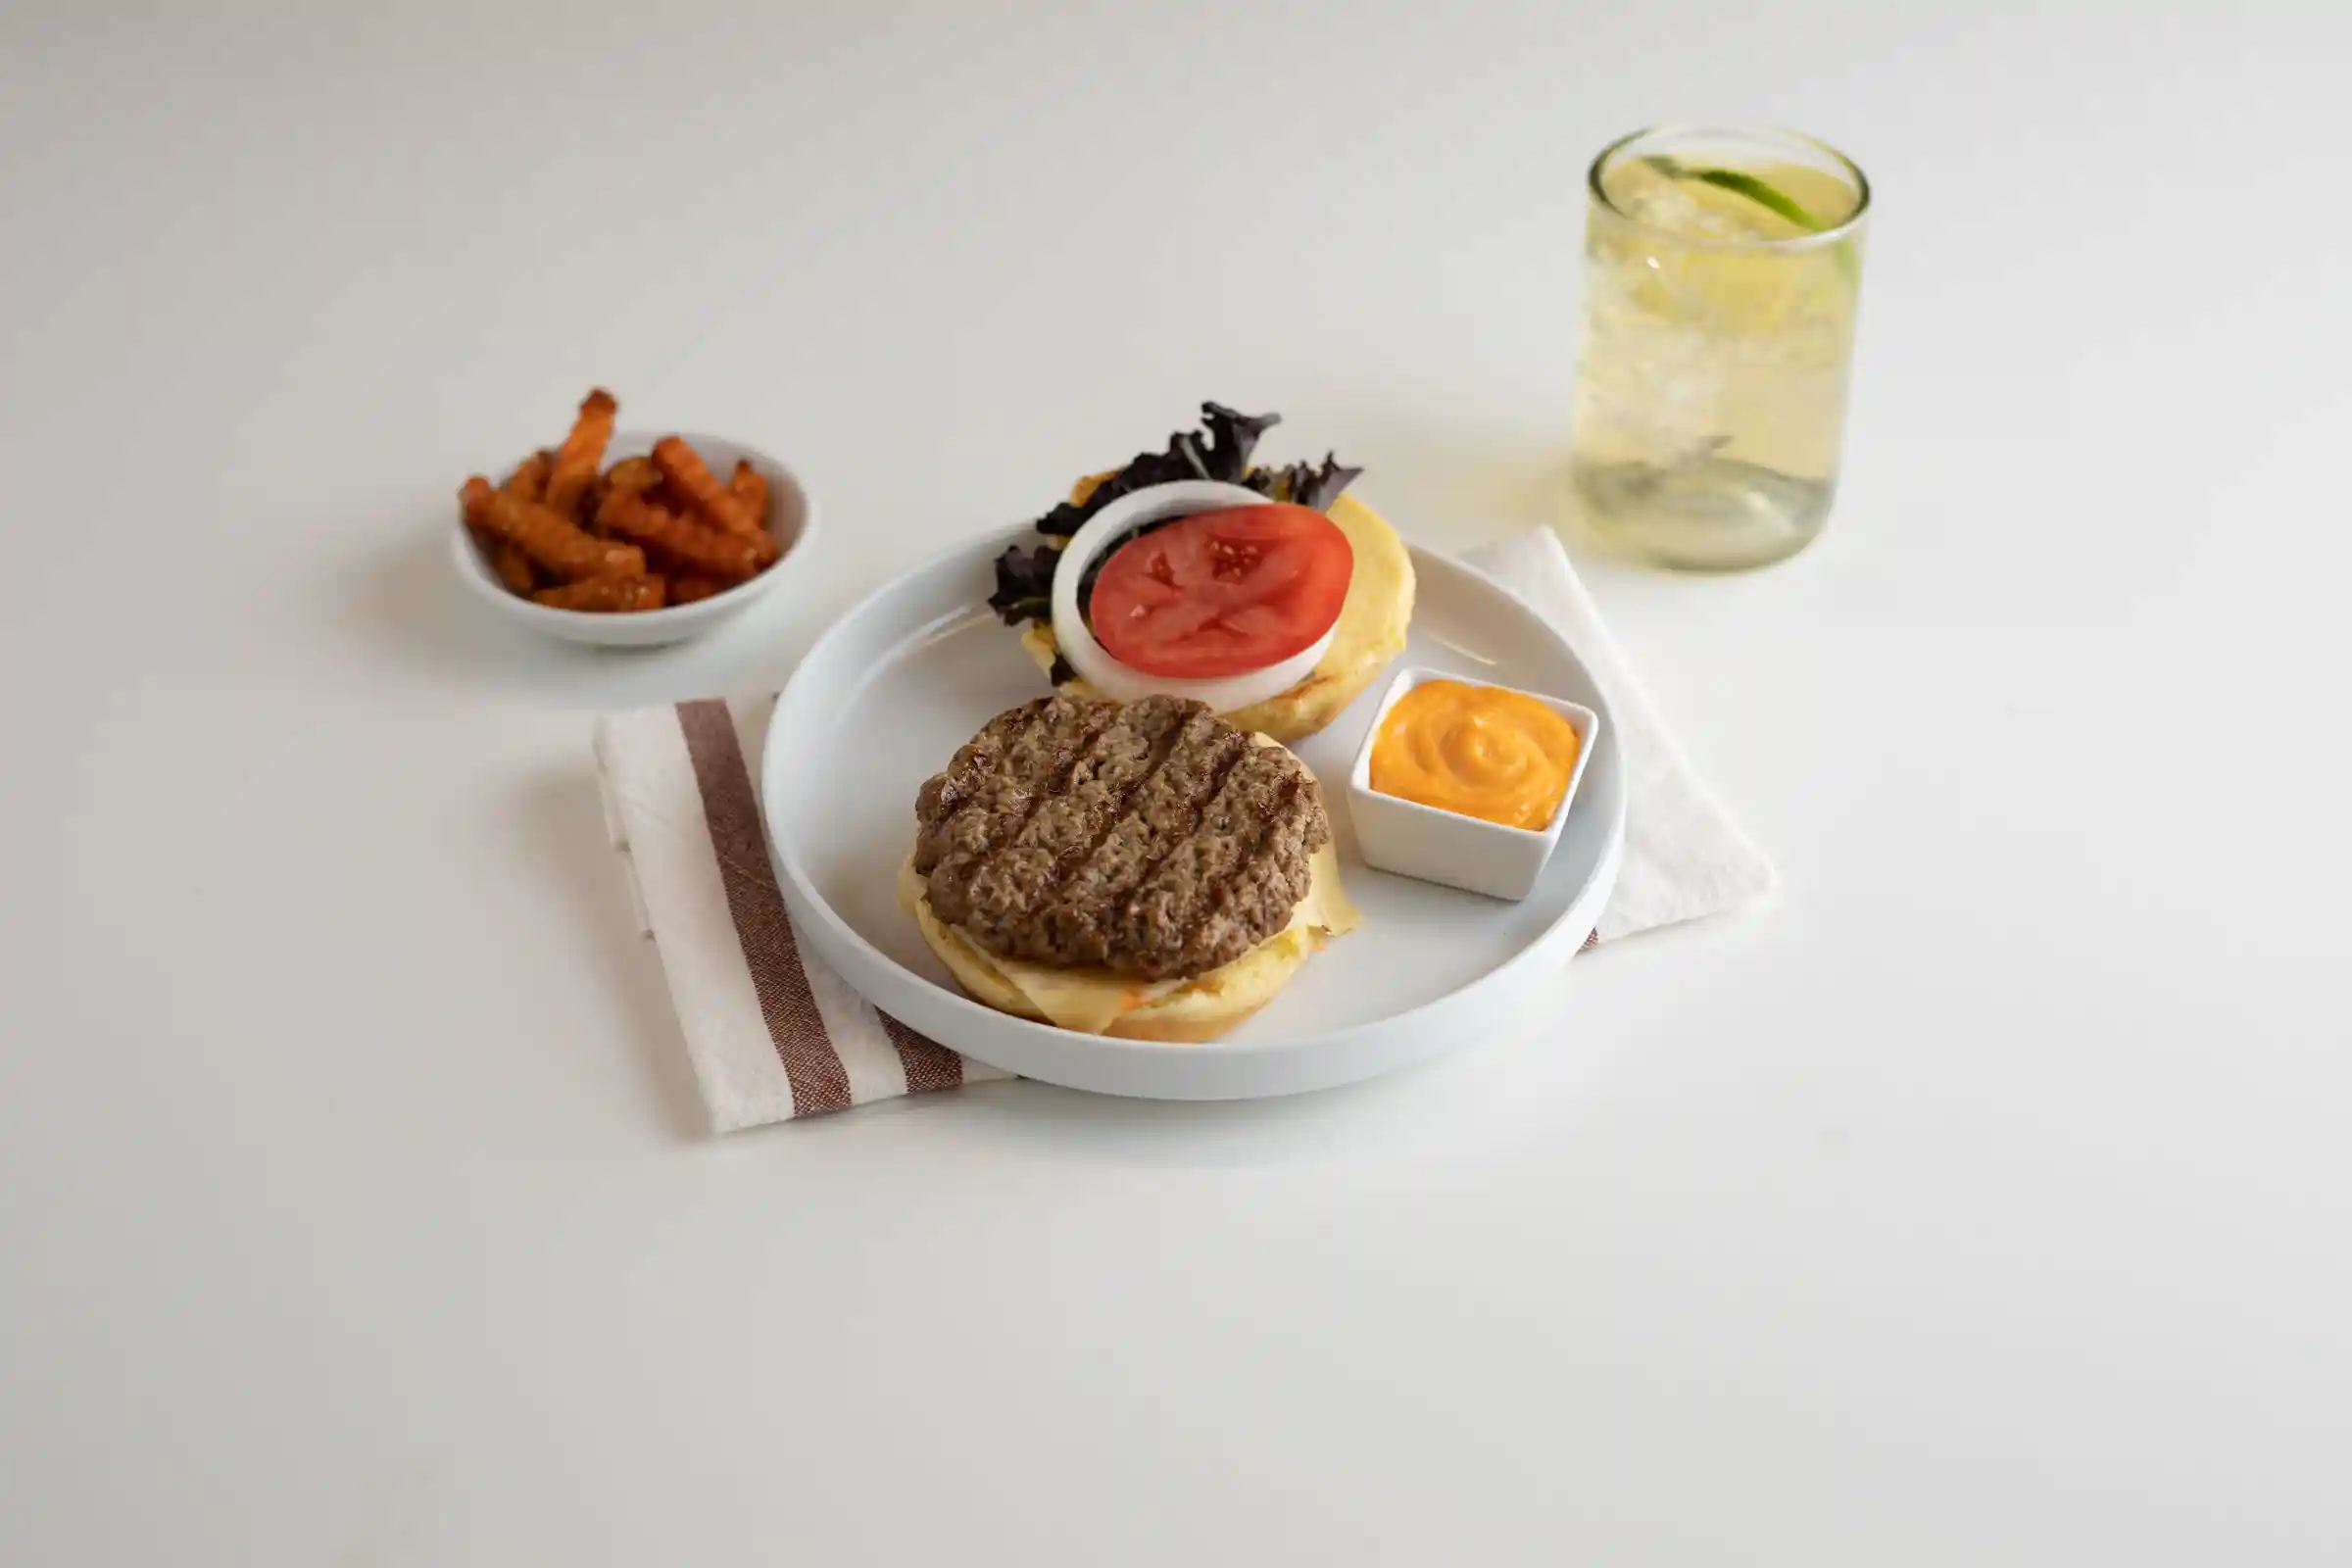 Ball Park® Flame Grilled Beef Burger, 3 oz.https://images.salsify.com/image/upload/s--PDuM7Jrf--/q_25/lptitm72iyjsc3m0tpsb.webp